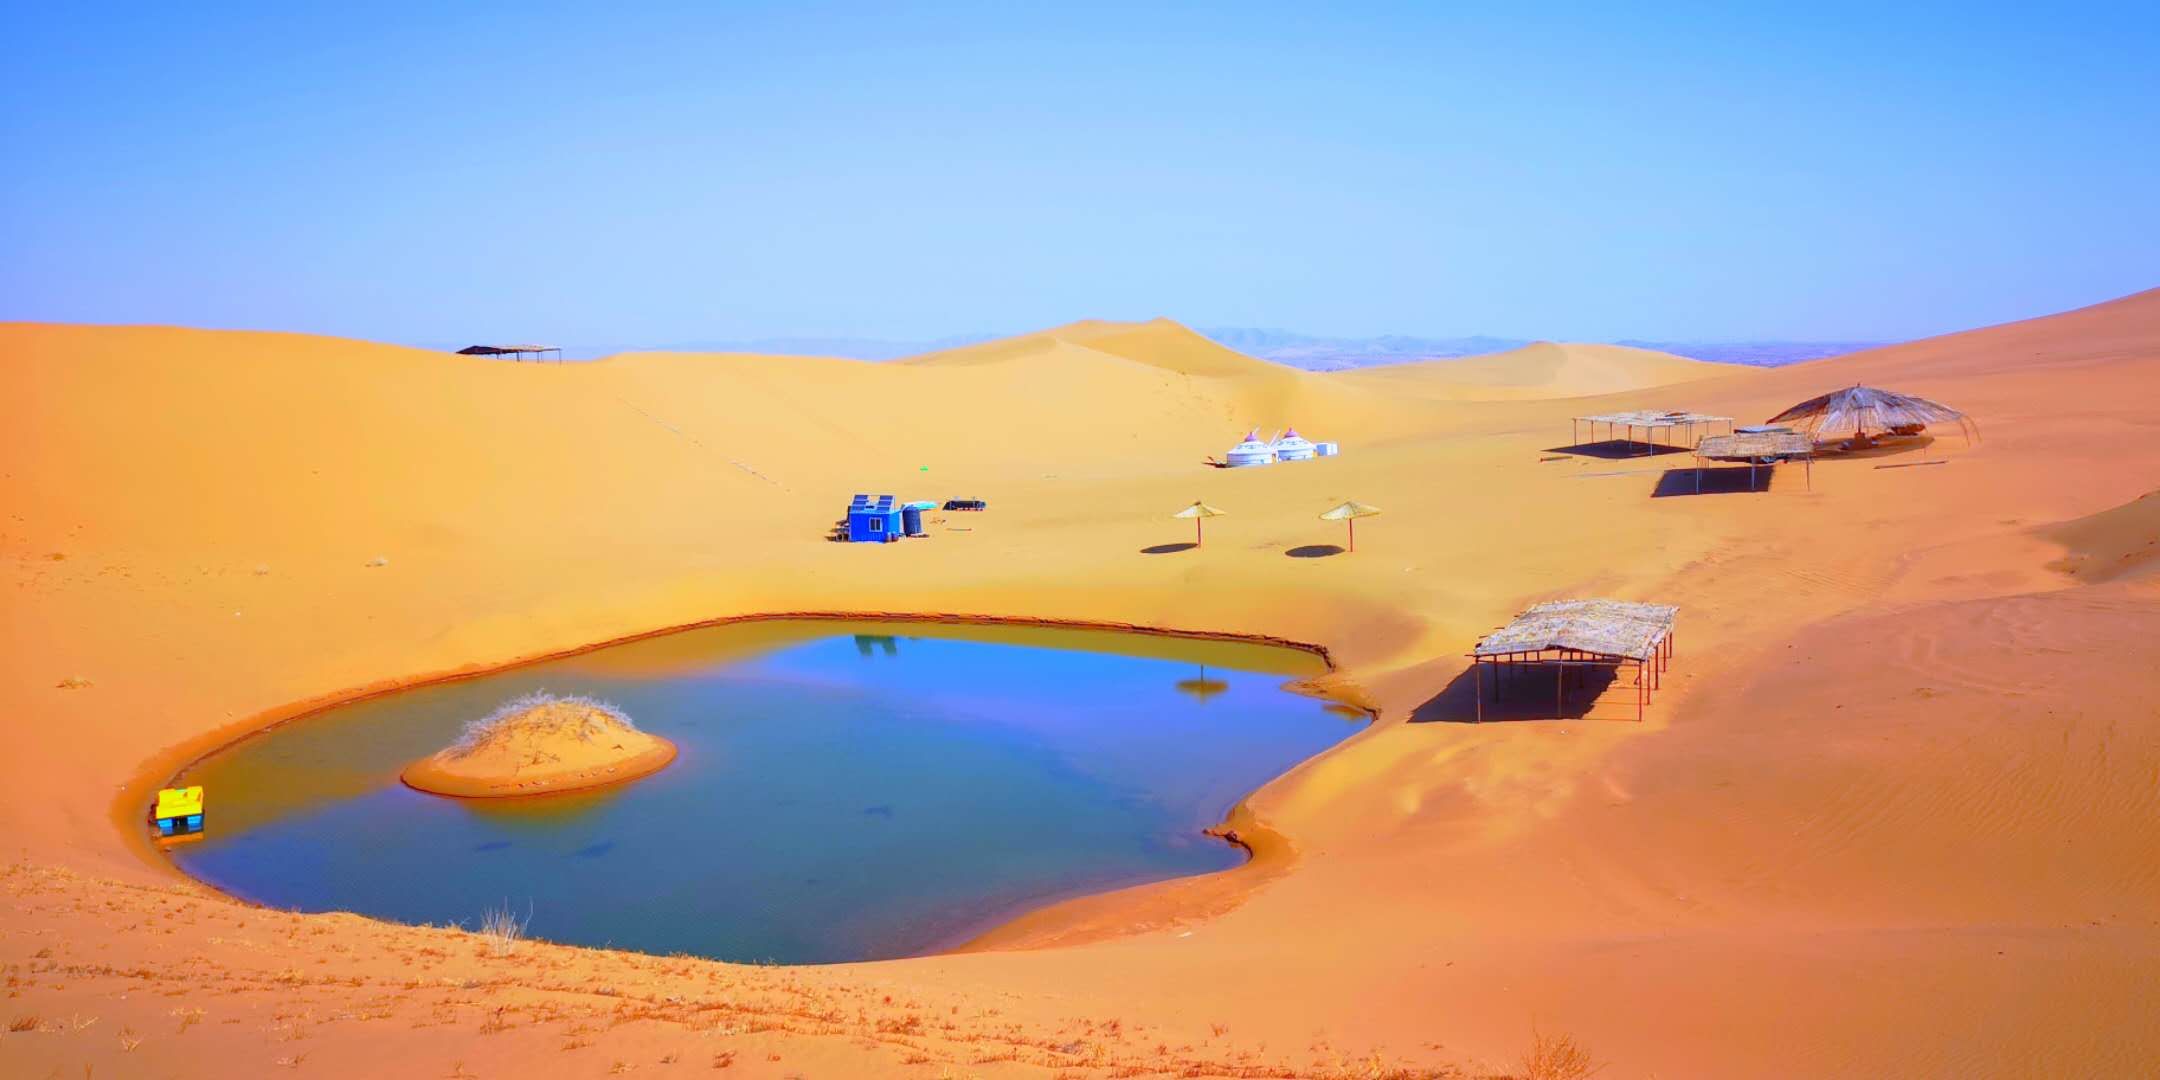 腾格里沙漠腹地 - 中卫景点 - 华侨城旅游网